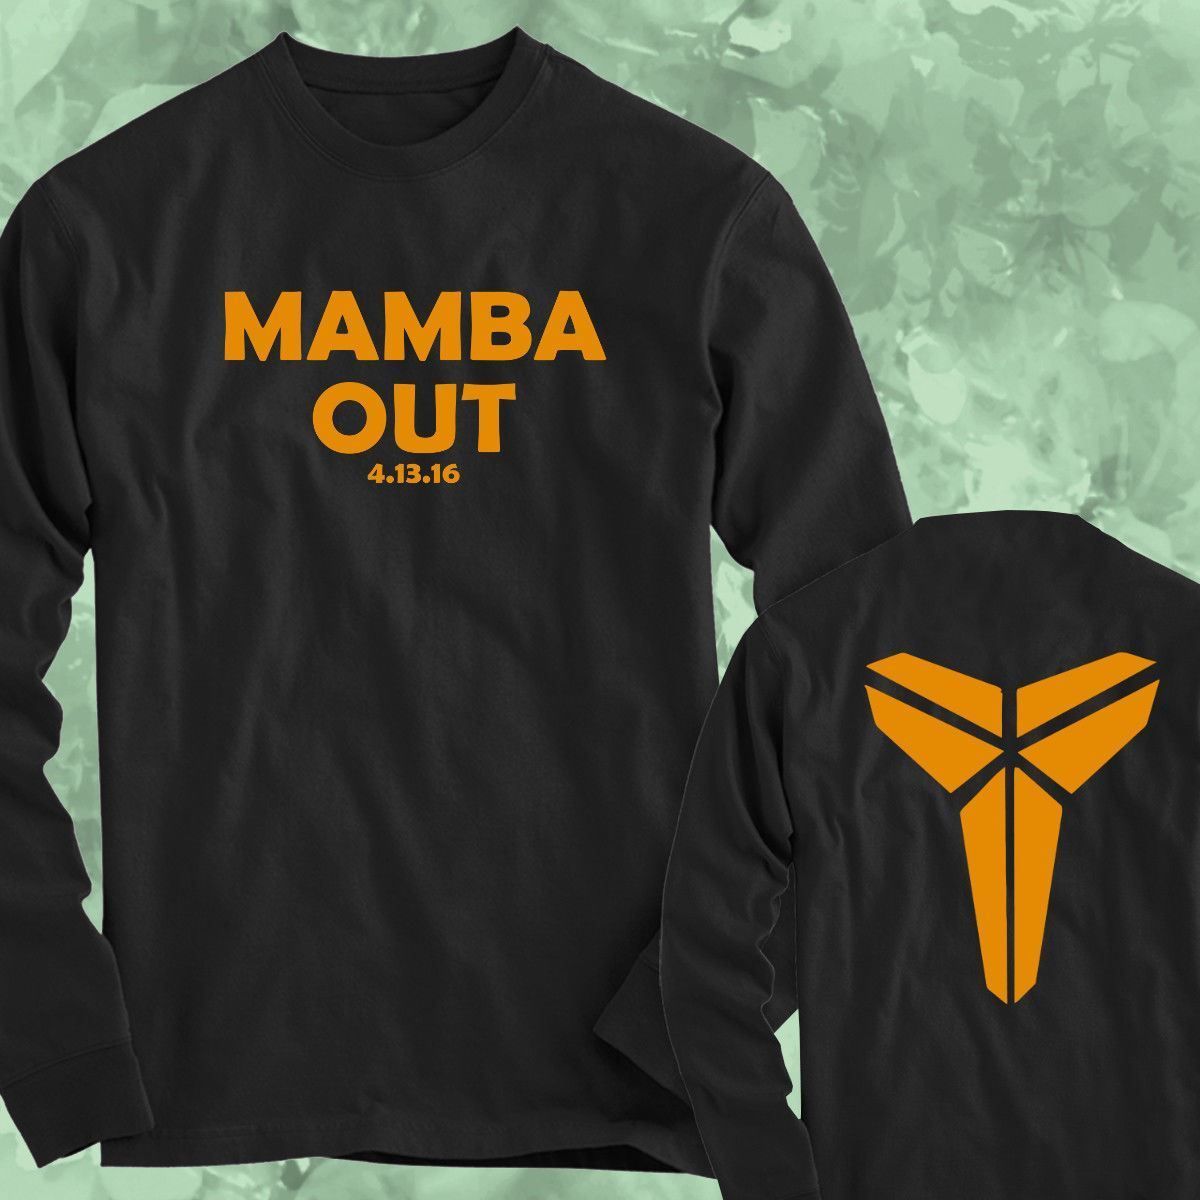 mamba out tee shirts